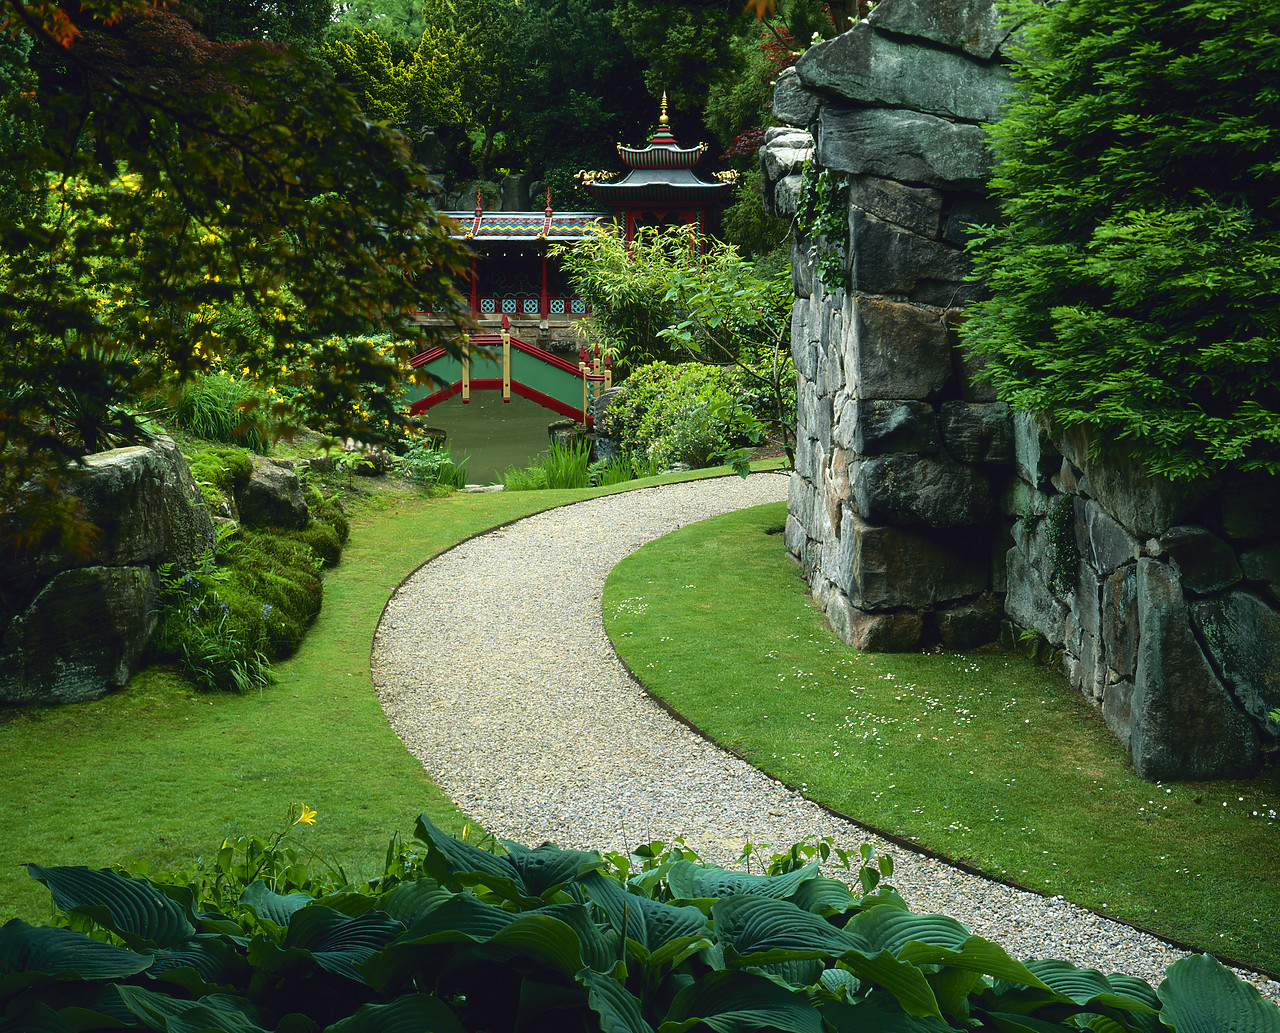 #030208-1 - Chinese Garden, Biddulph Grange Garden, Staffordshire, England